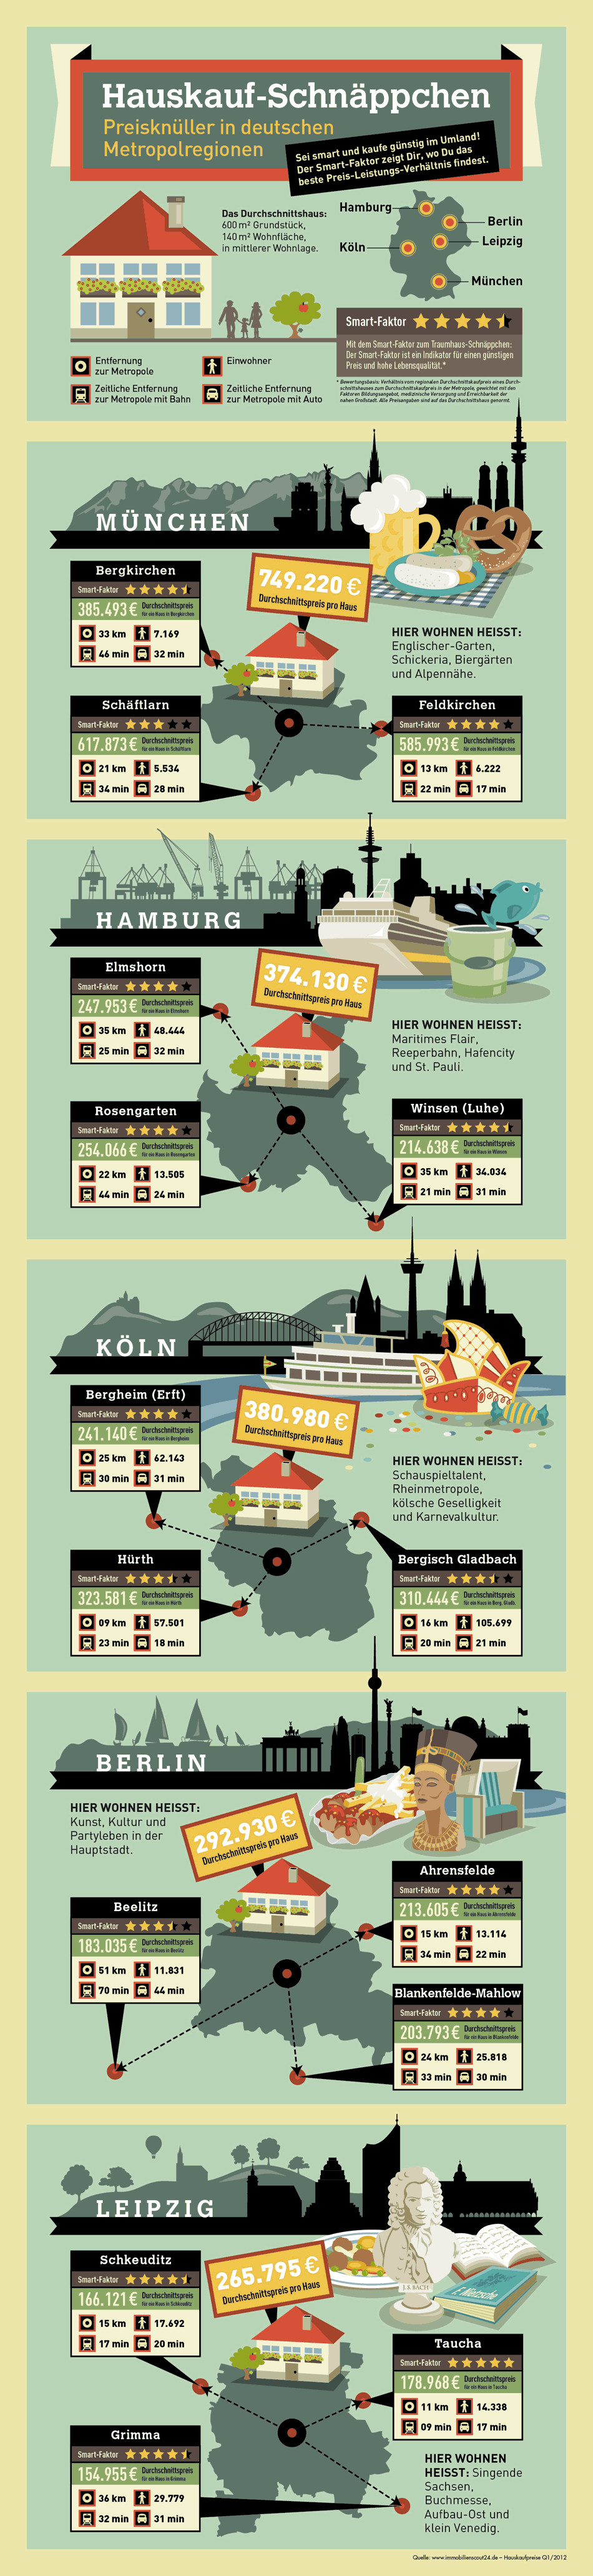 Haus Kauf
 Hauskauf Schnäppchen in deutschen Metropolregionen